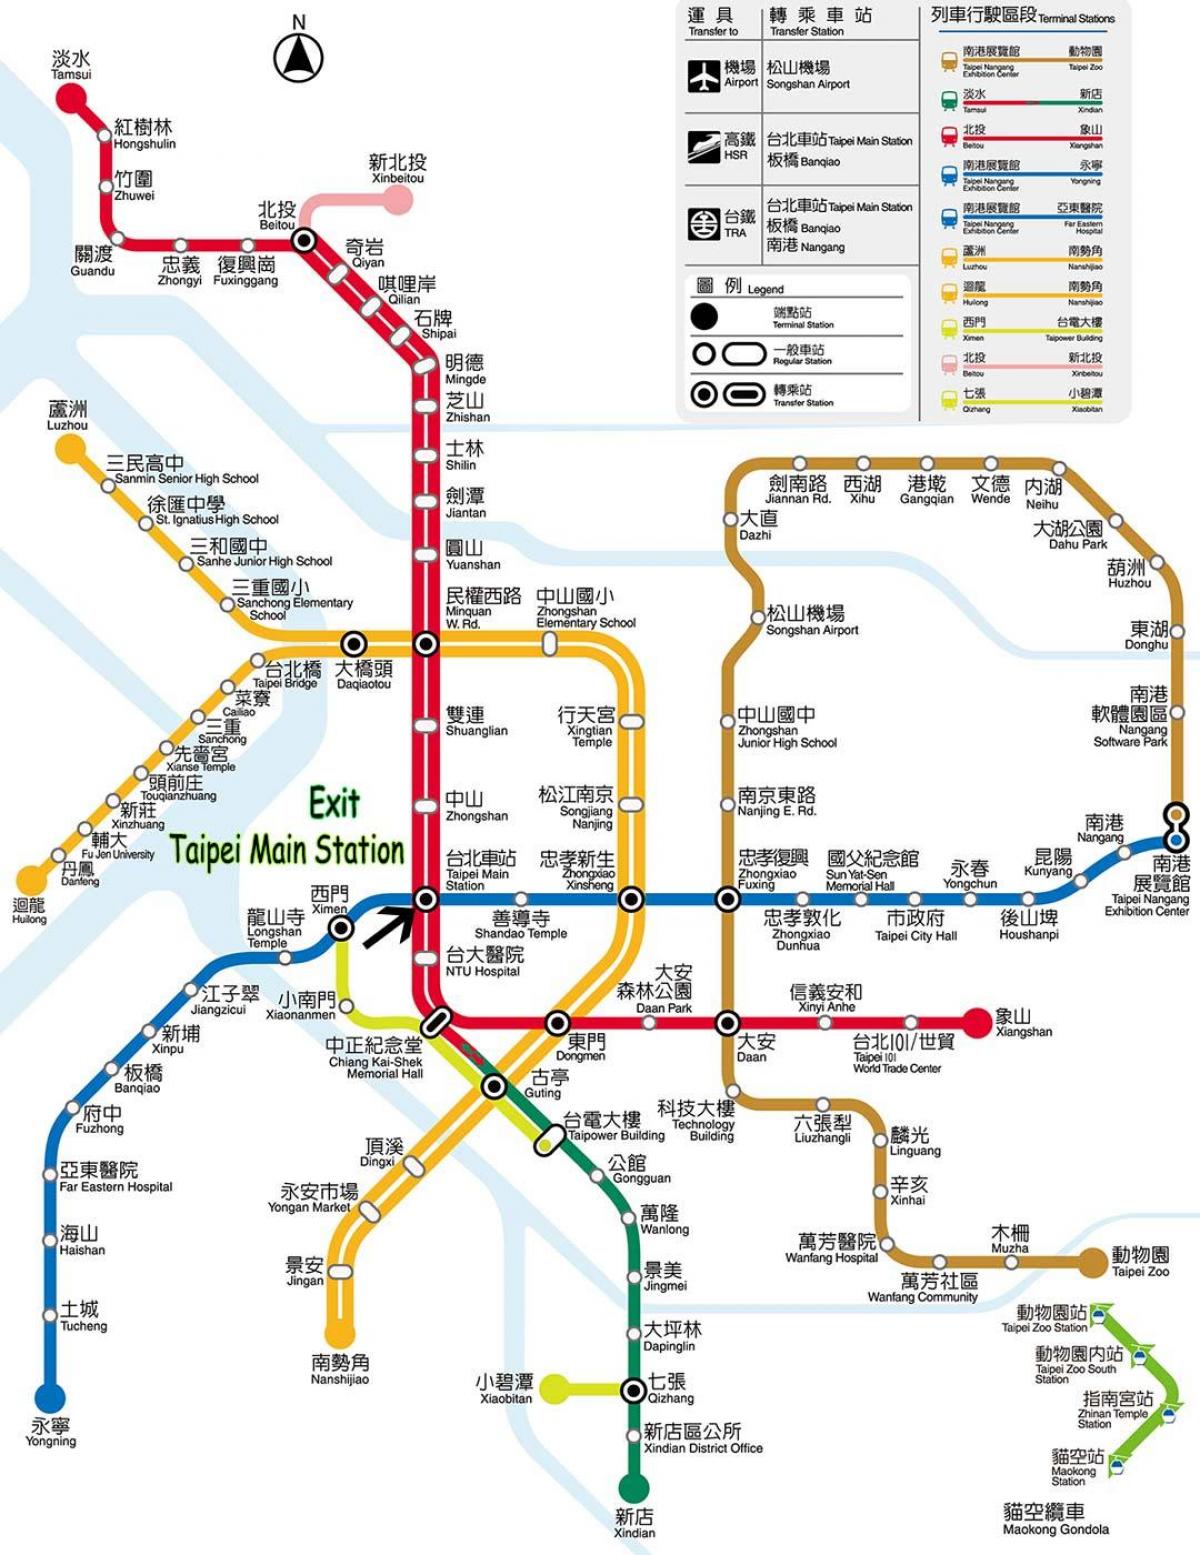 Hãy cùng khám phá ga xe lửa Đài Bắc - Taipei với những hệ thống công nghệ tiên tiến và đẹp mắt nhất. Từ nay đến năm 2024, ga xe lửa này sẽ tiếp tục nâng cấp và cải tiến để đáp ứng nhu cầu di chuyển của du khách và người dân.